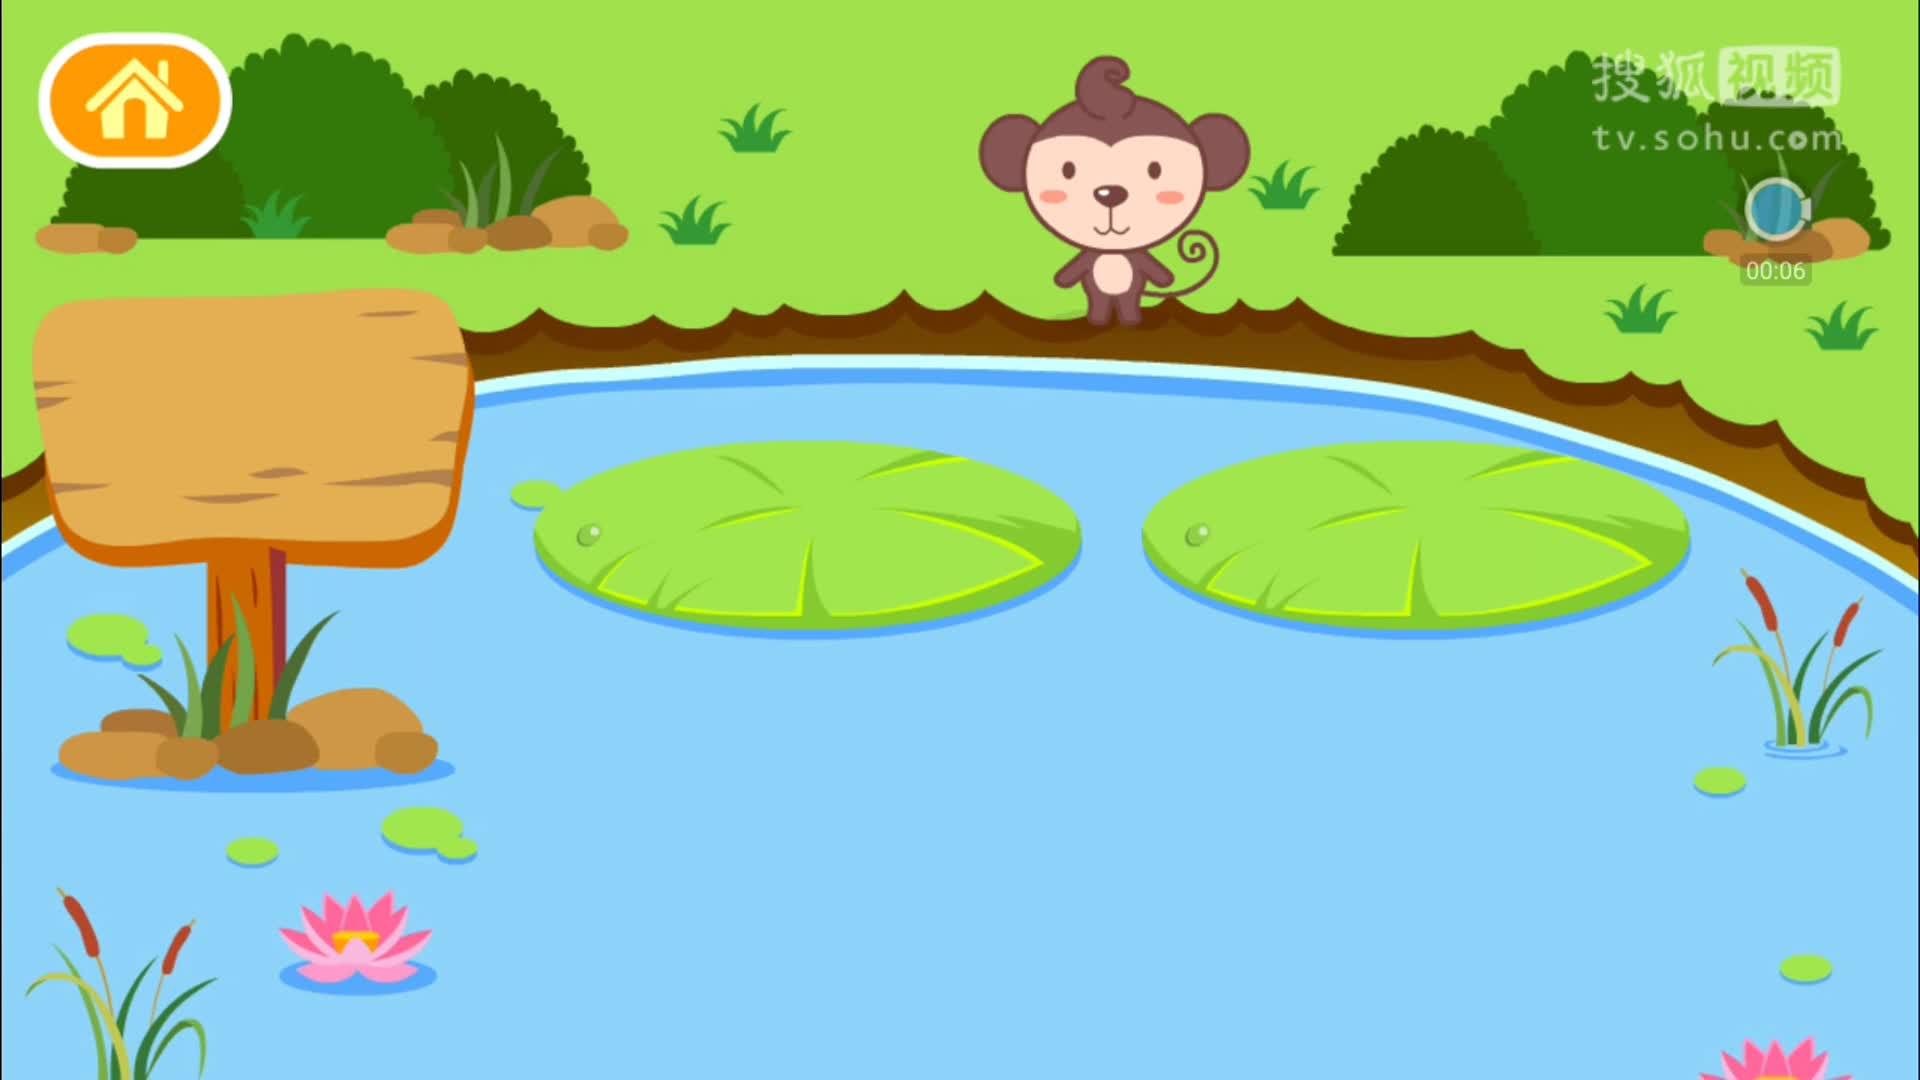 宝宝学汉字动画游戏 第6课 小猴过河 儿童亲子智力小游戏过家家